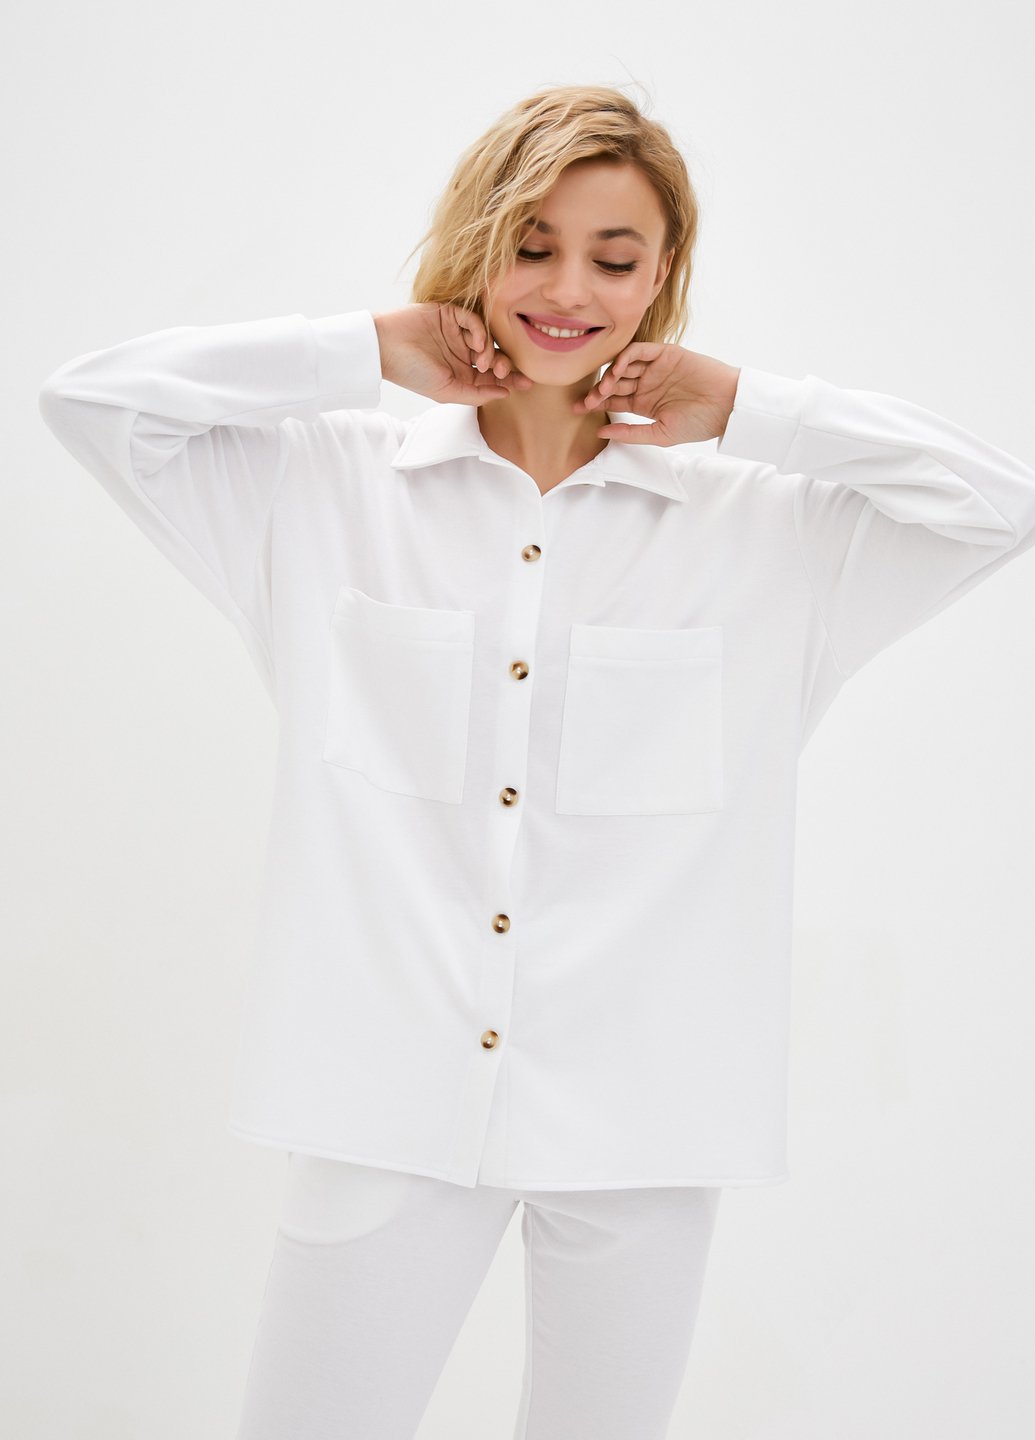 Купить Рубашка женская трикотажная оверсайз Merlini Йорк 200000059 - Белый, 42-44 в интернет-магазине